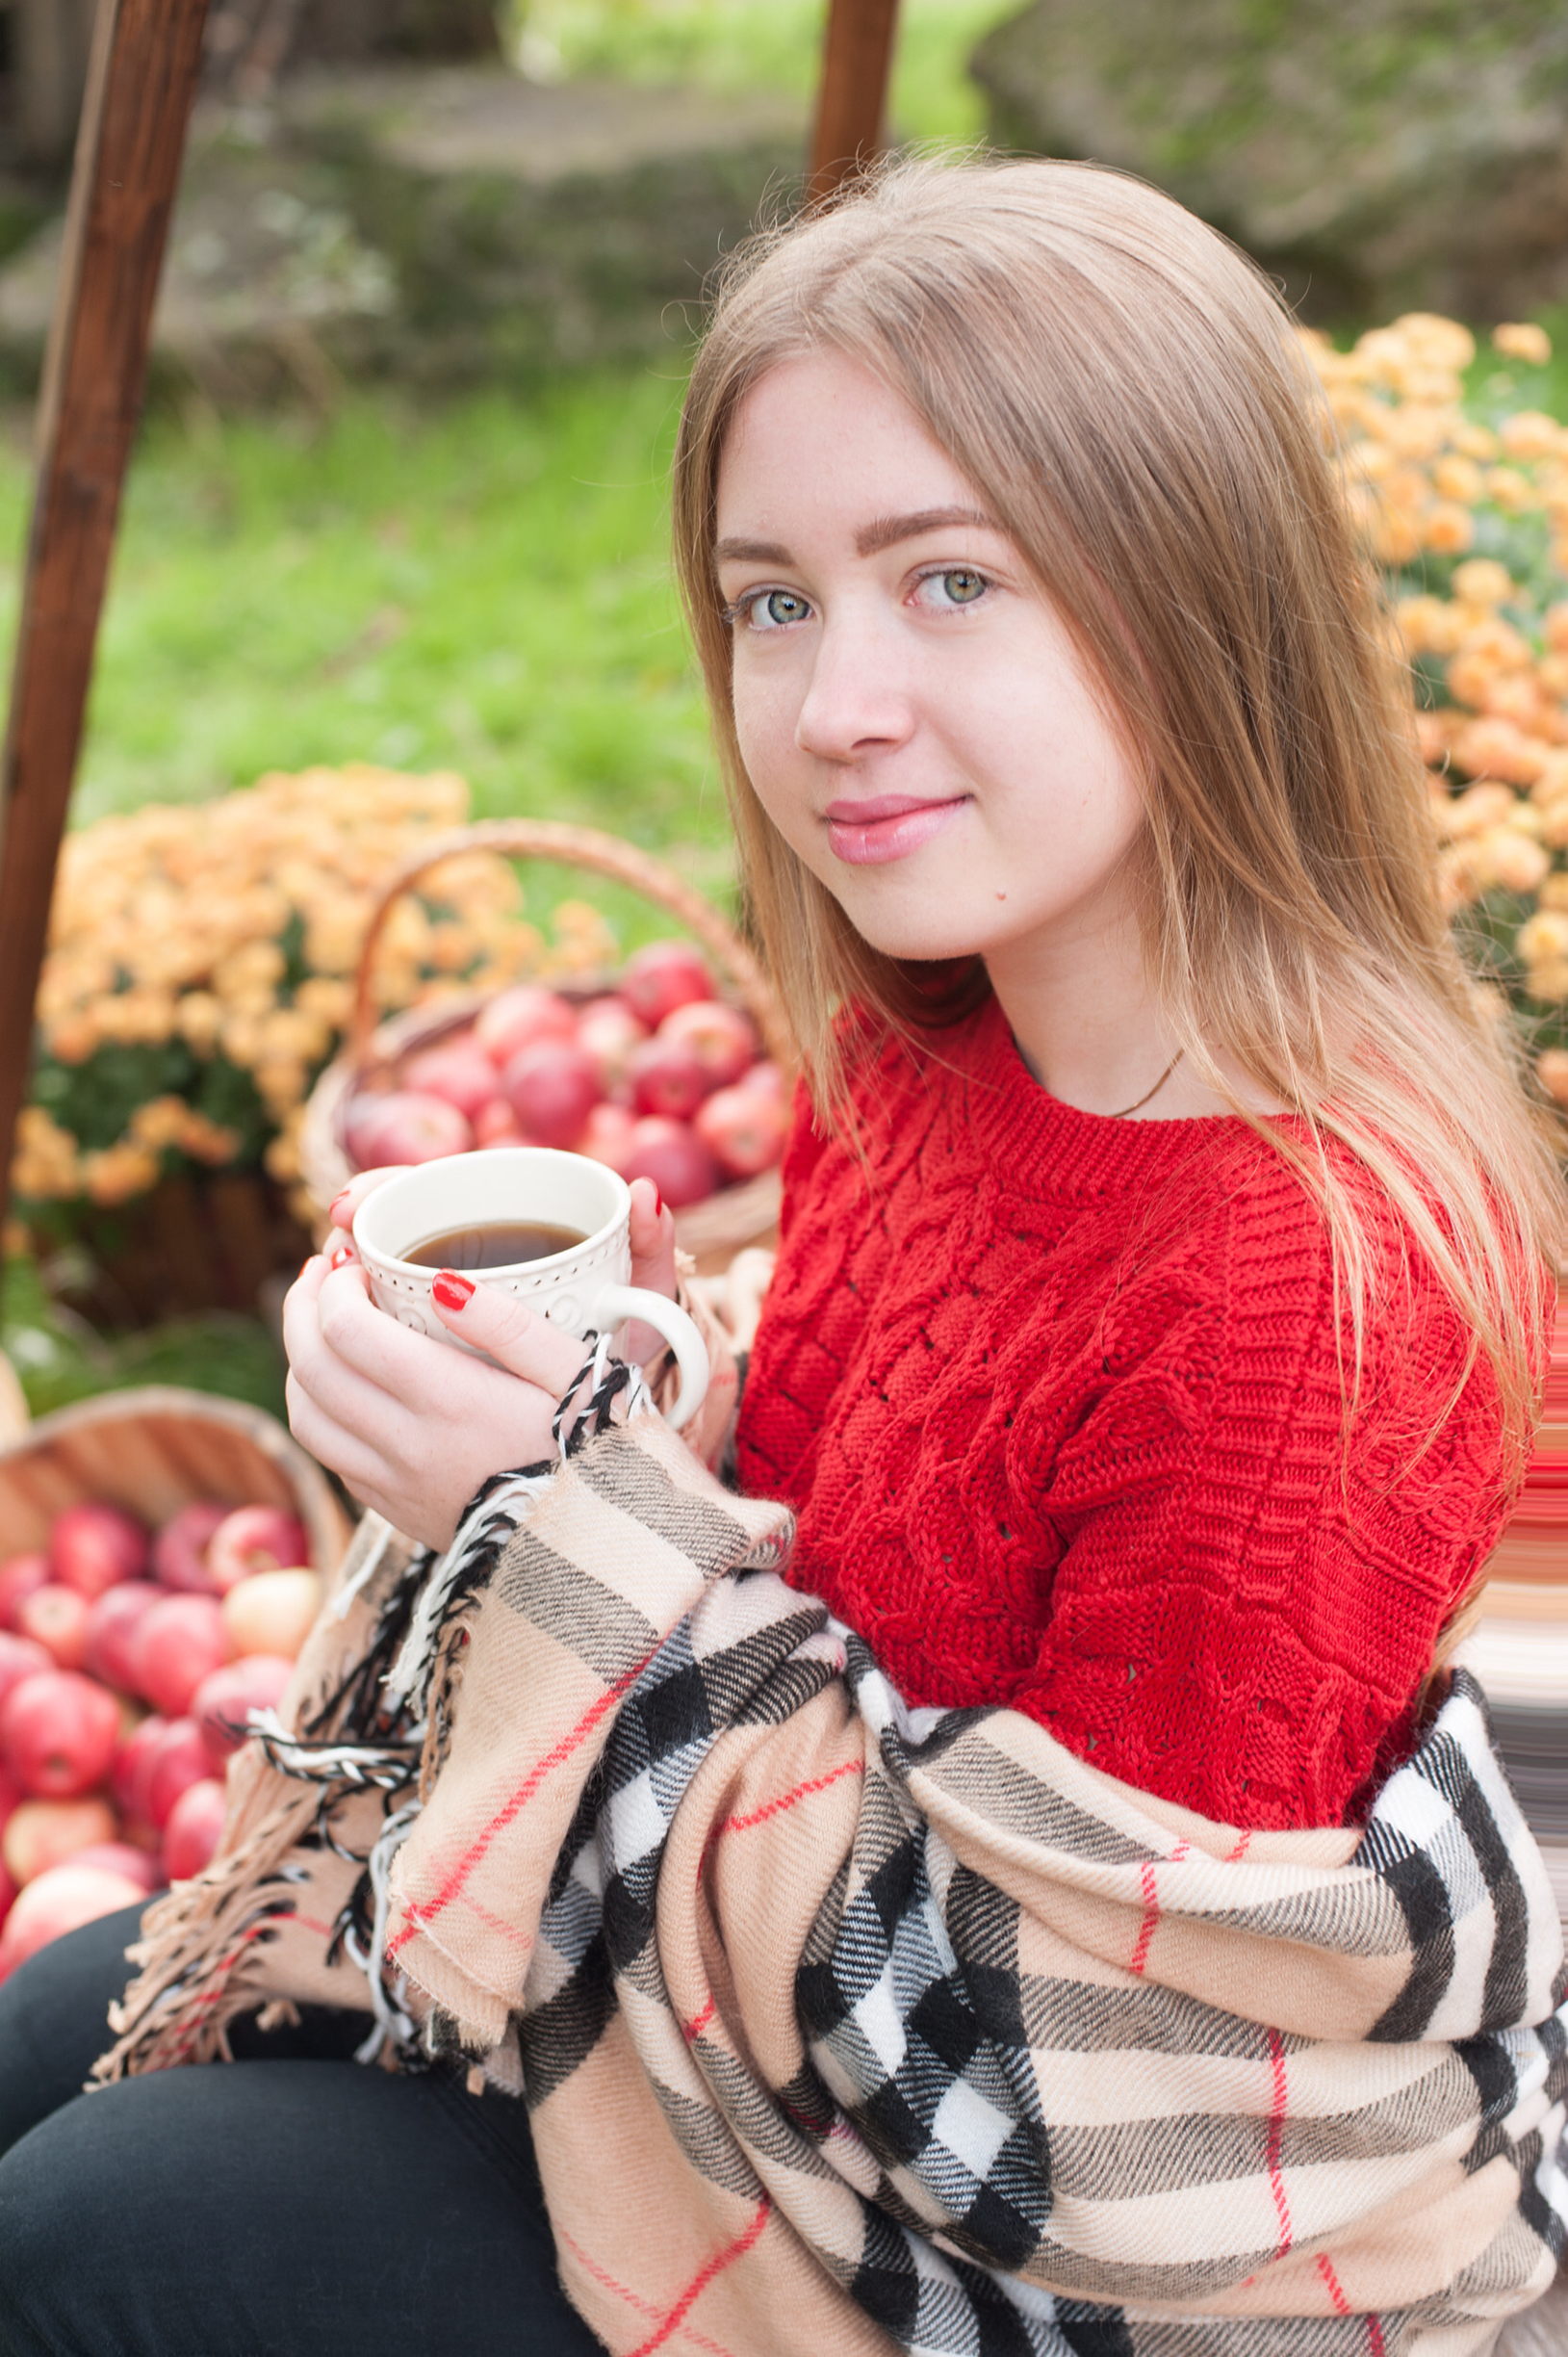 Daria drinking tea, sitting in a garden